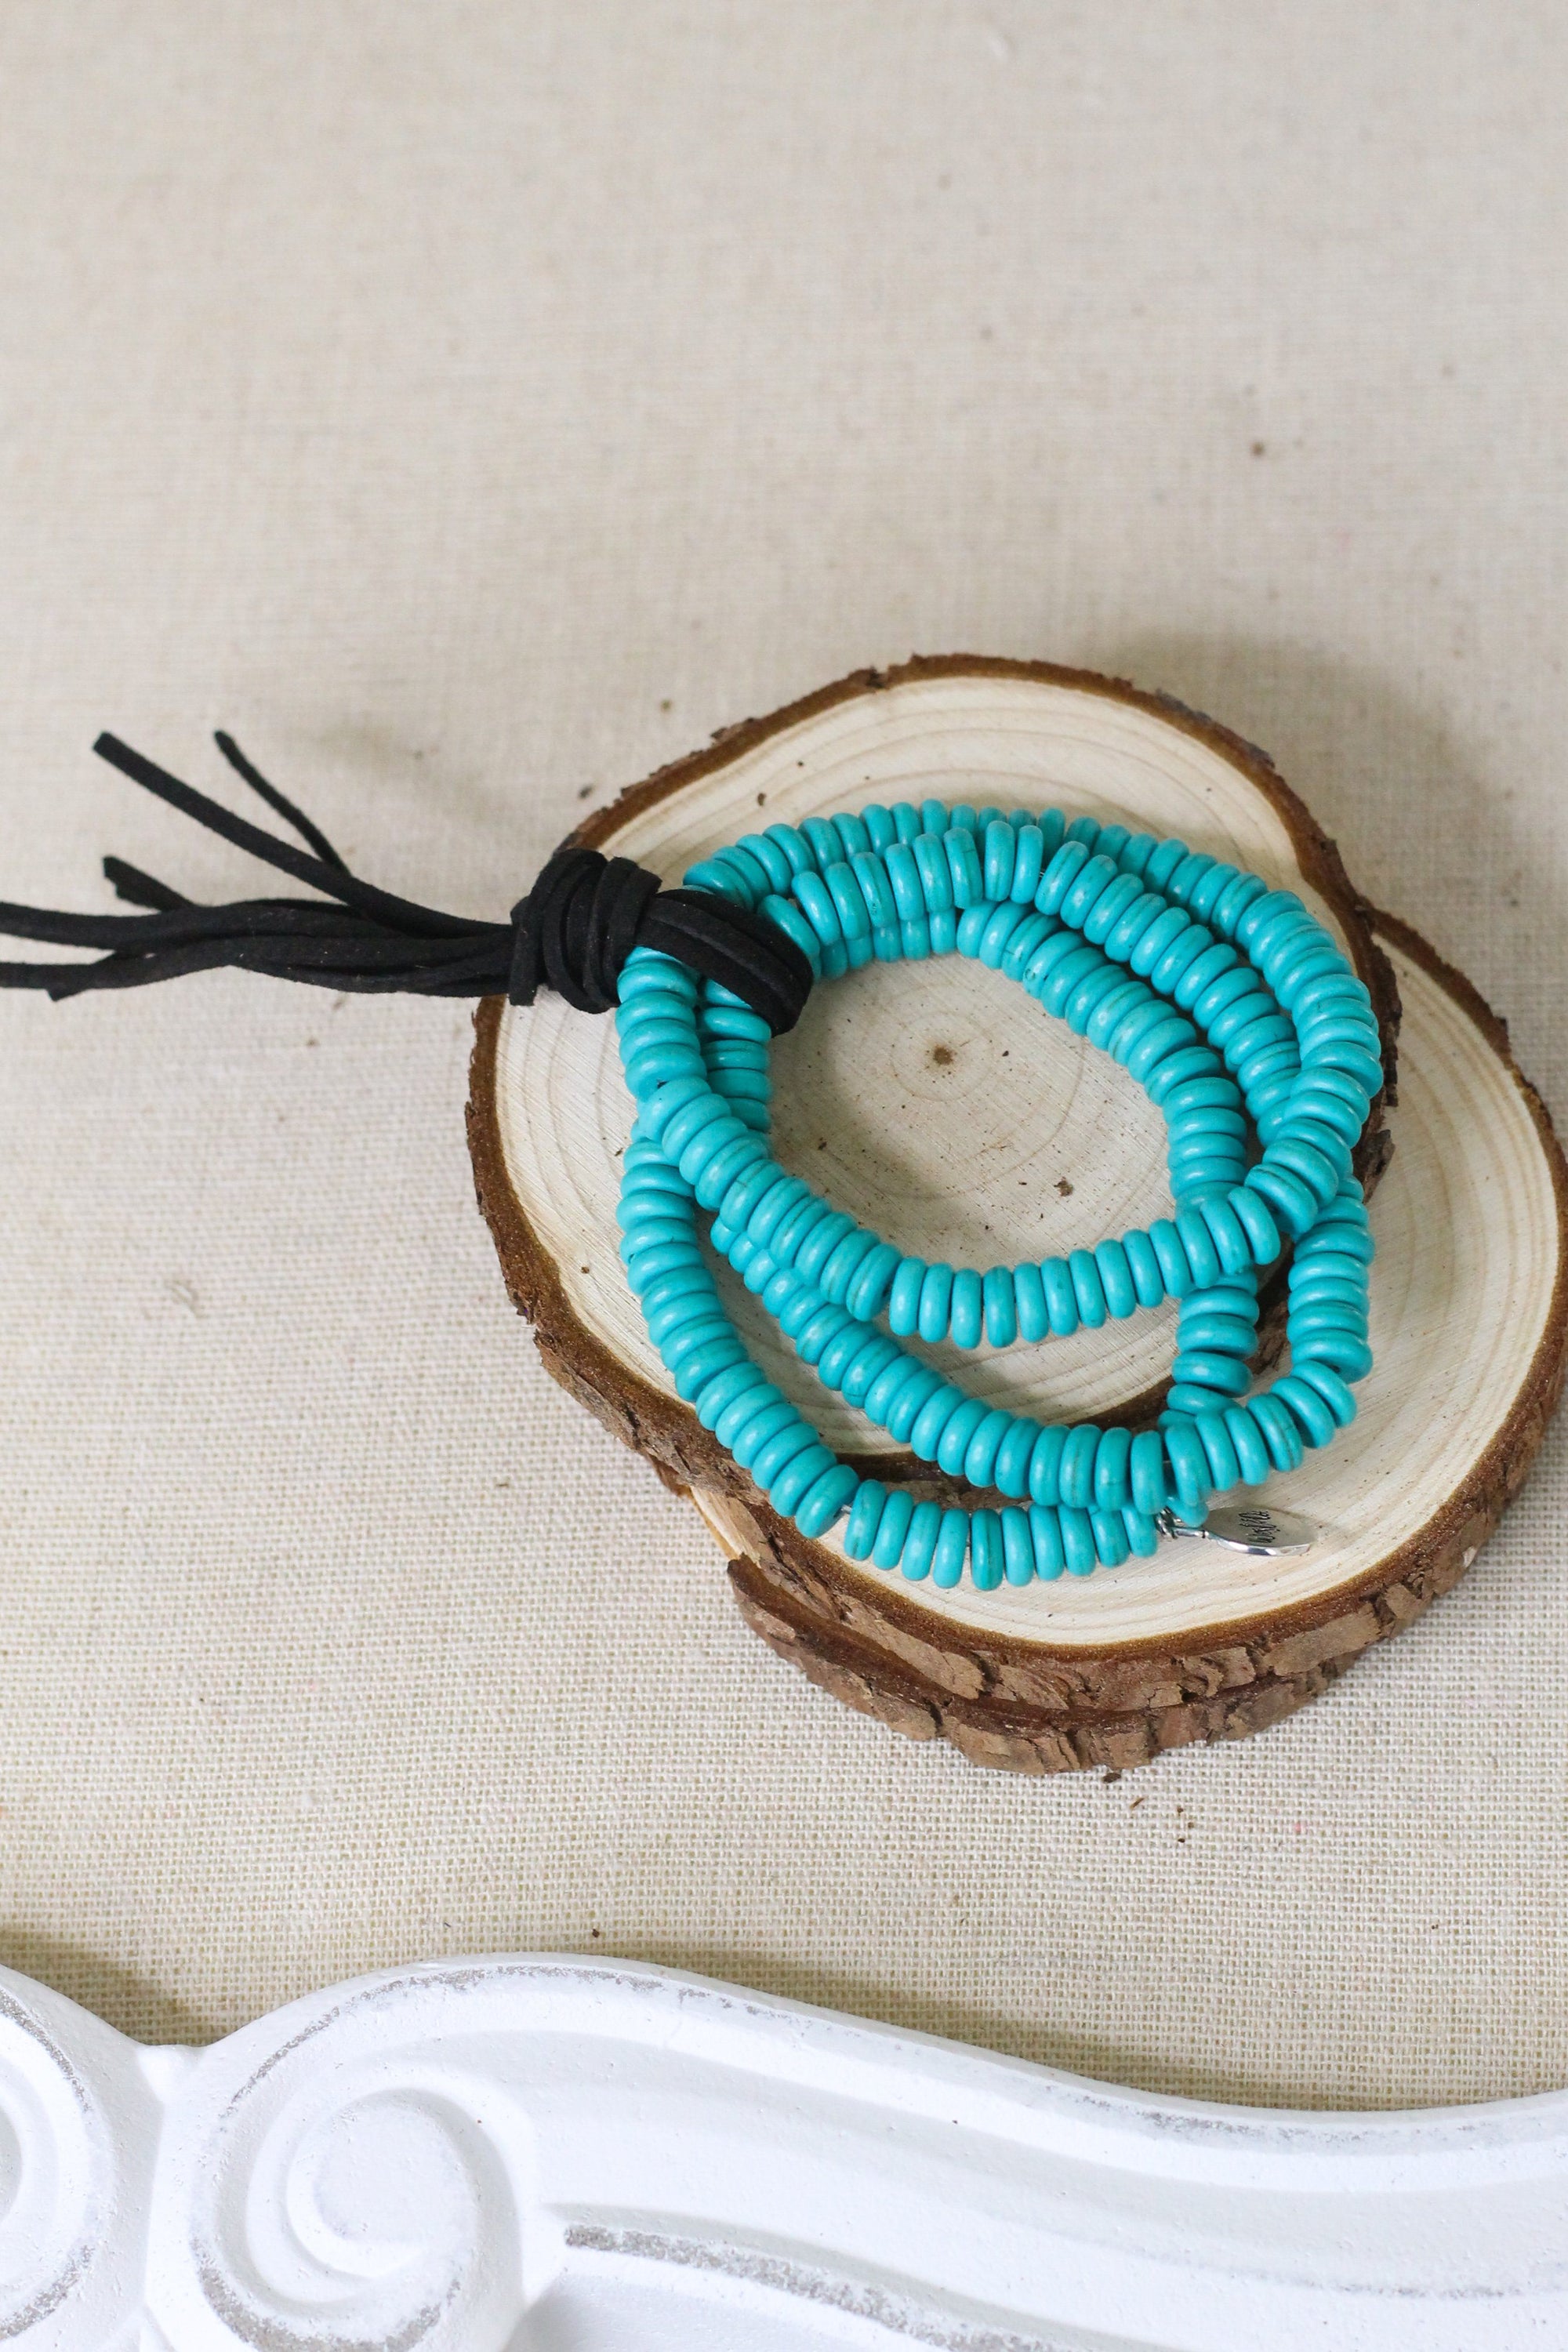 3 Strand Turquoise Bracelet Stack-Branded Envy